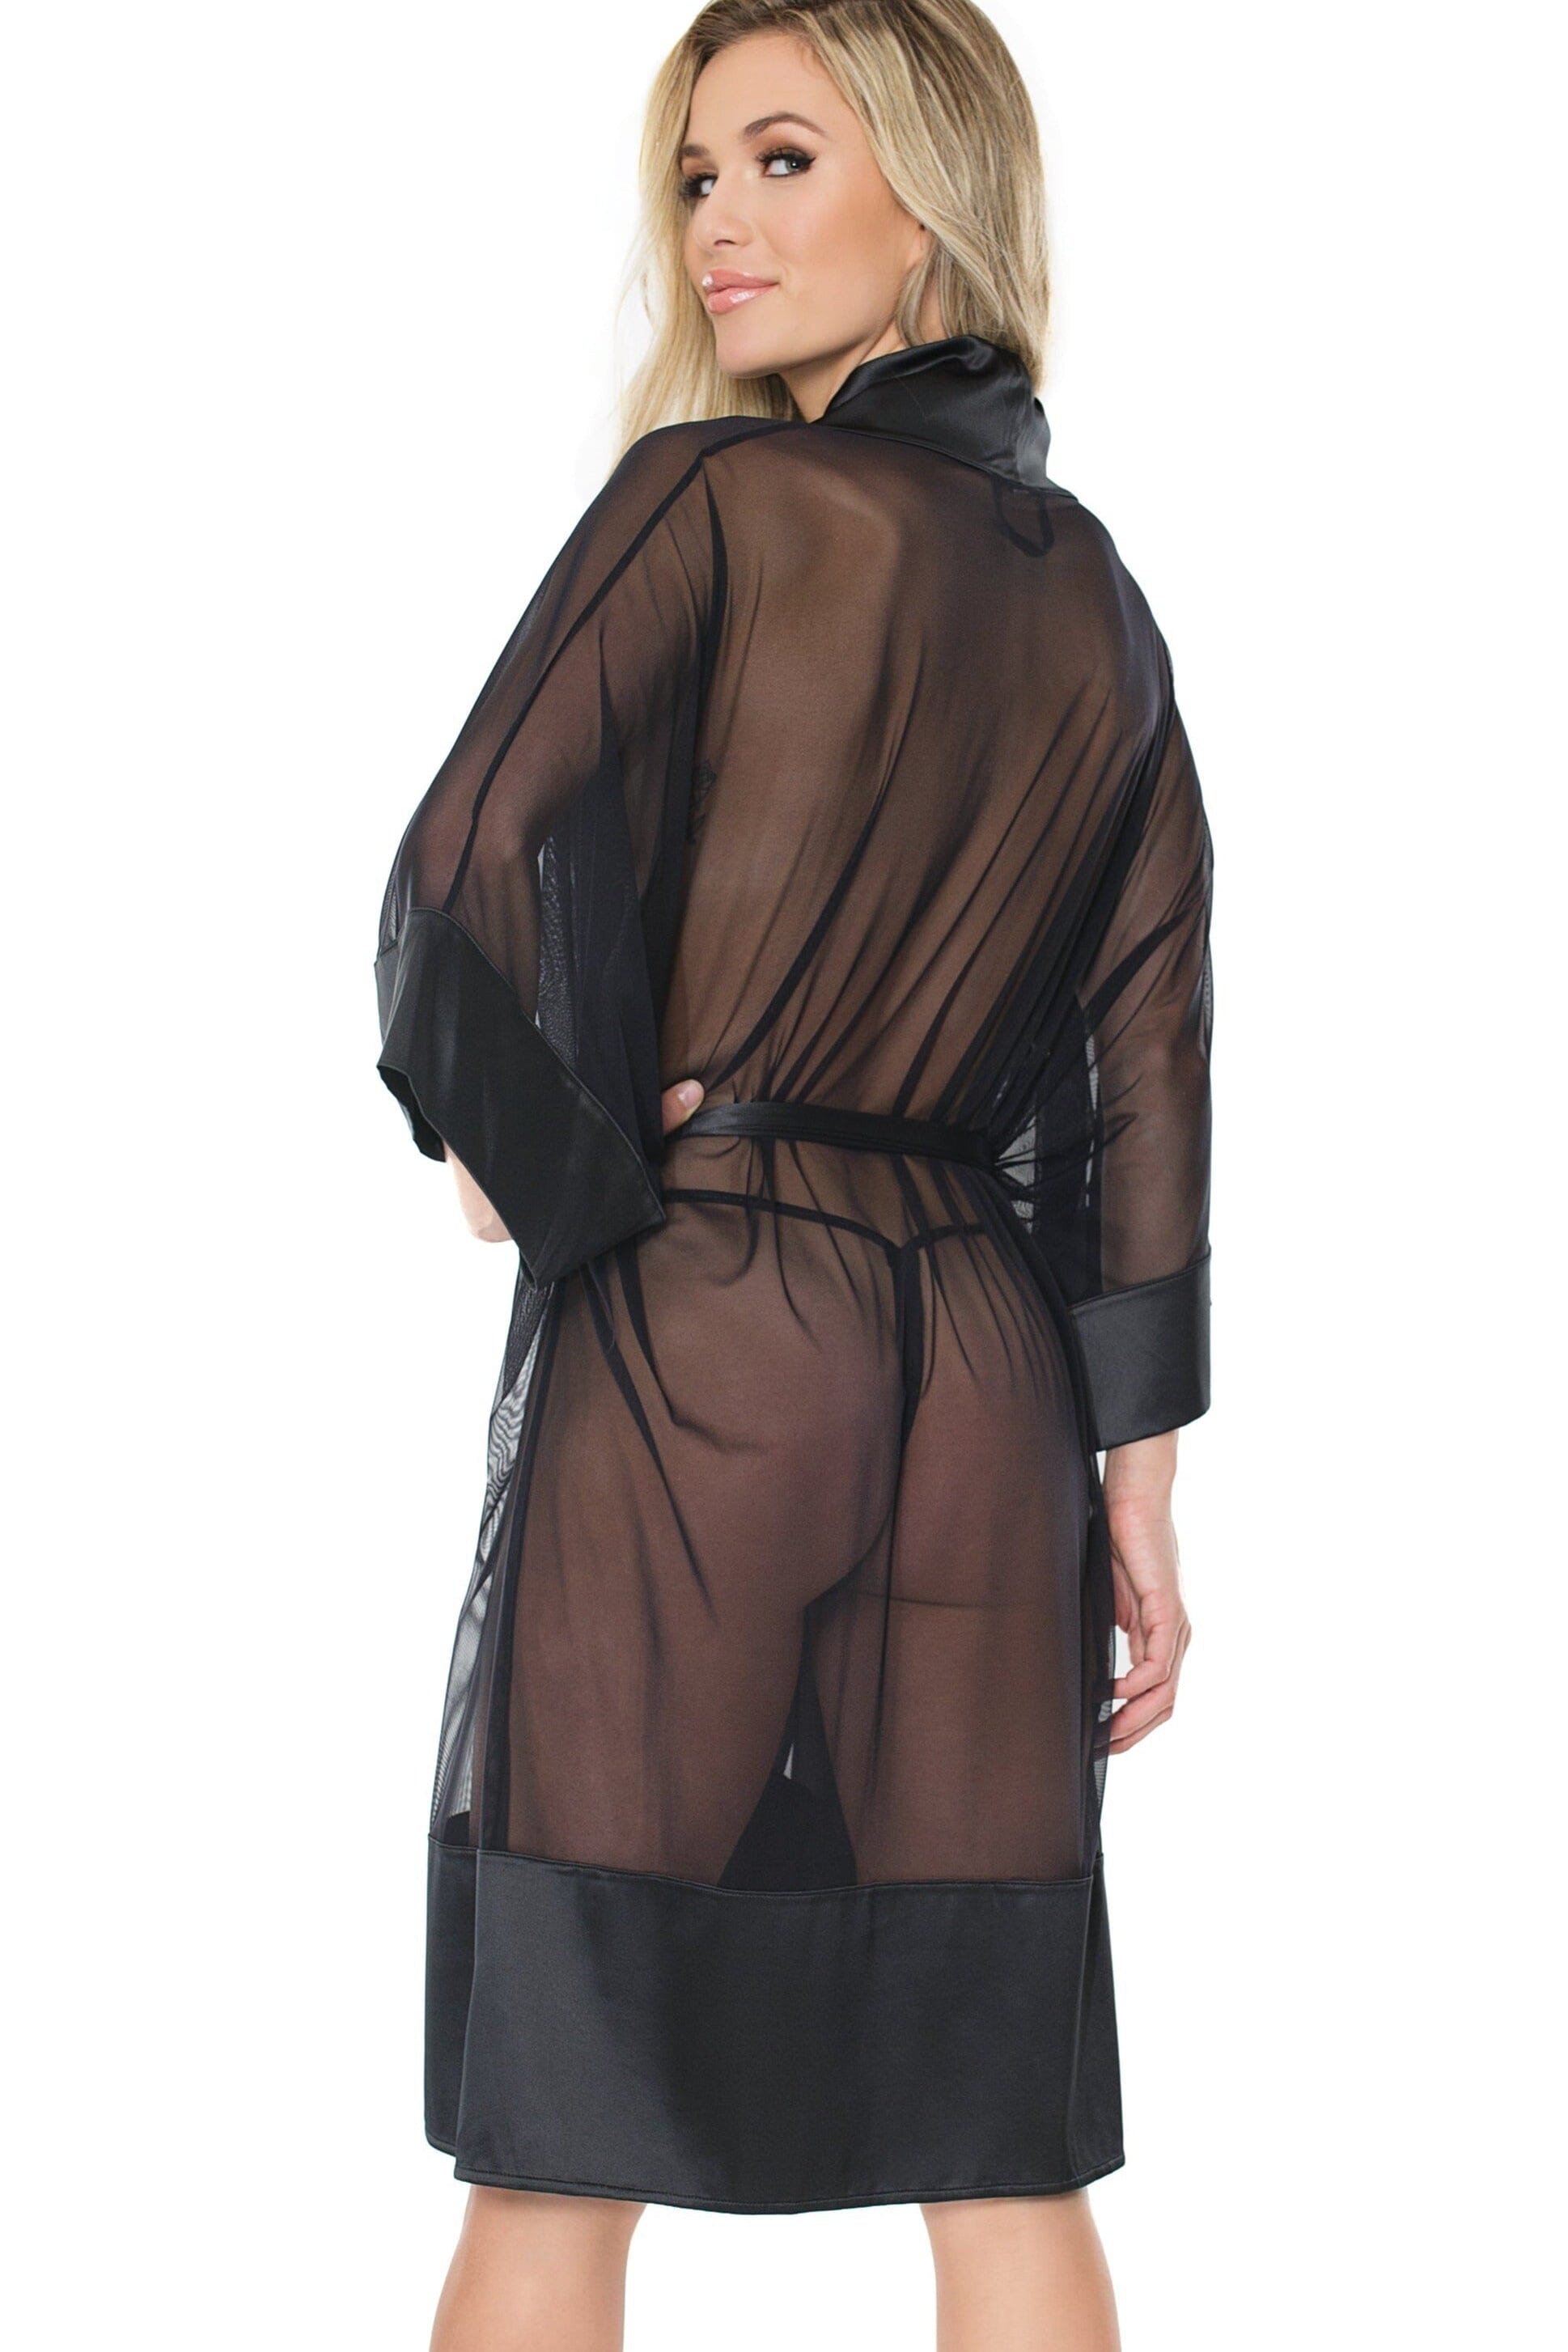 Elvira Sheer Robe S/M – OMNIA